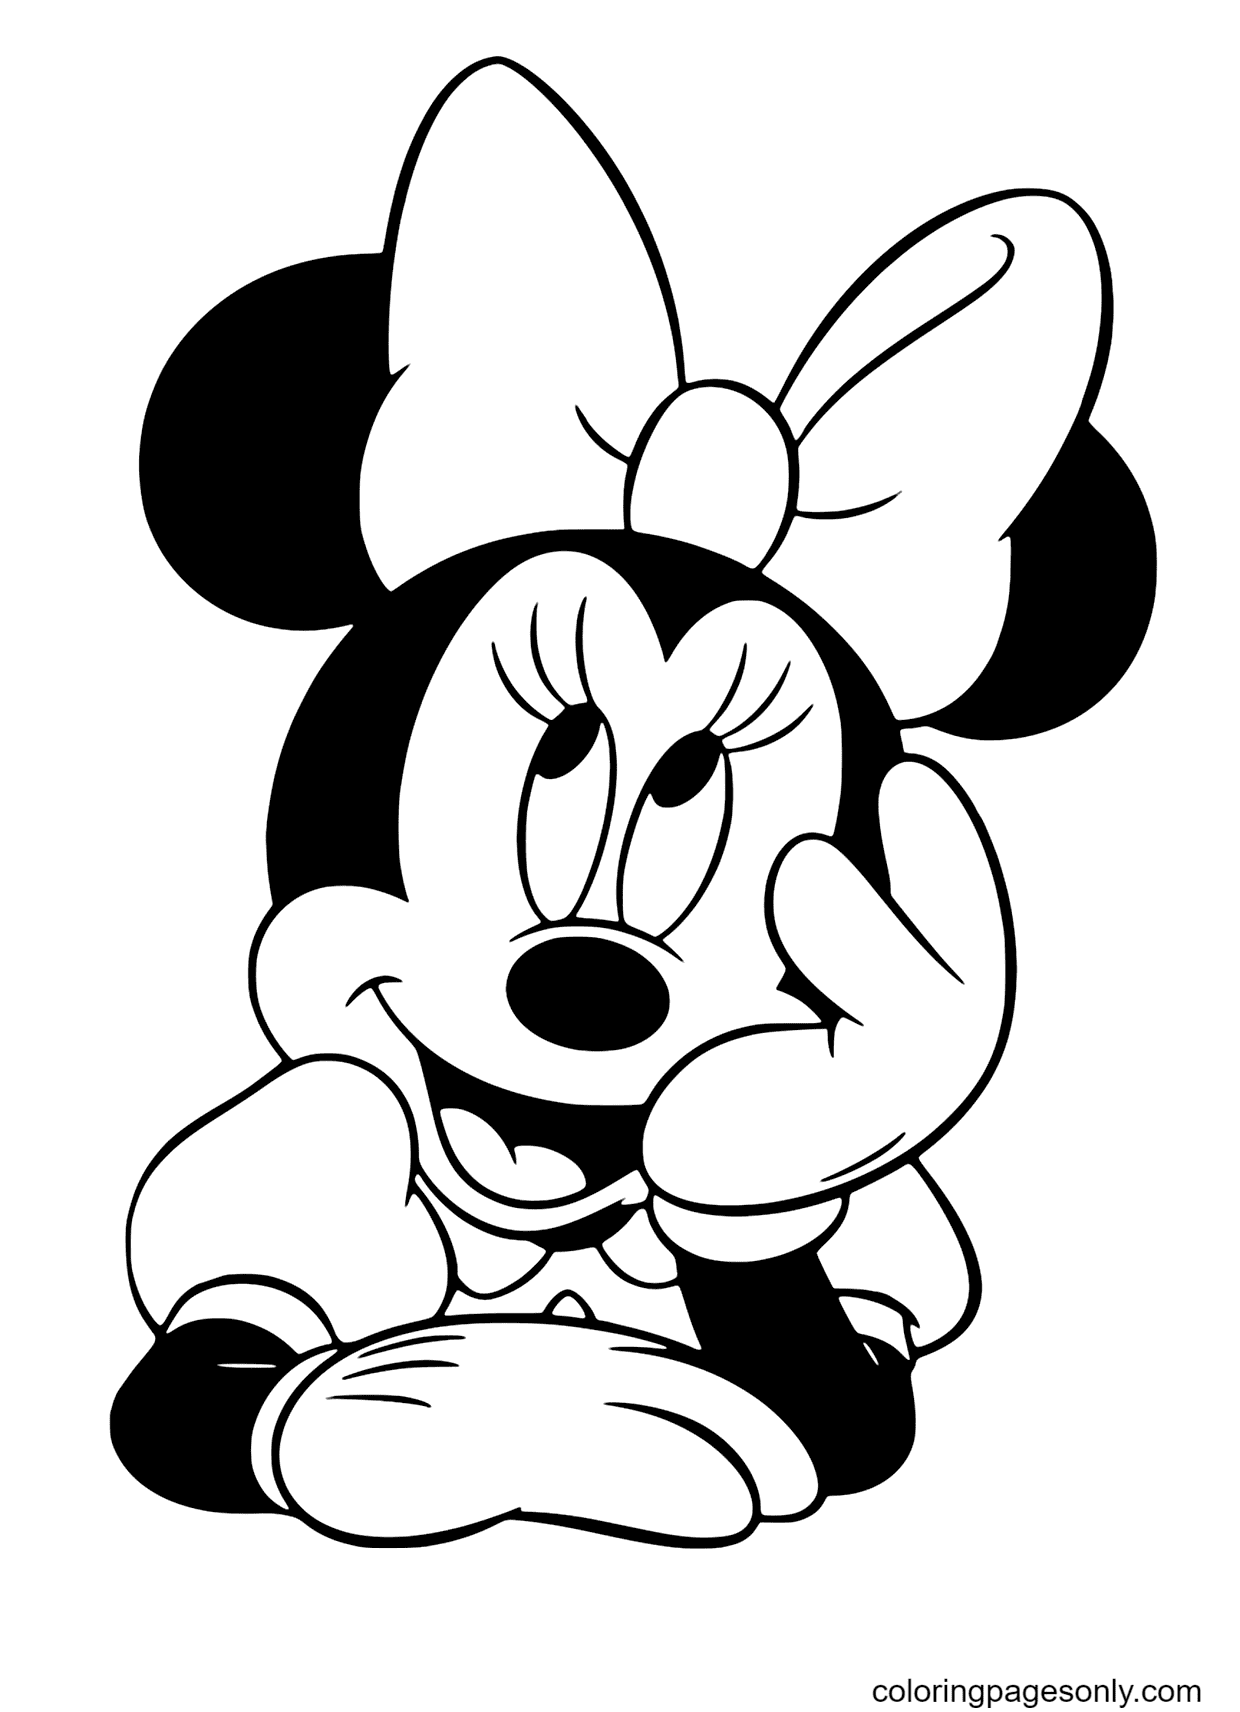 Kleurplaat Minnie Mouse denken